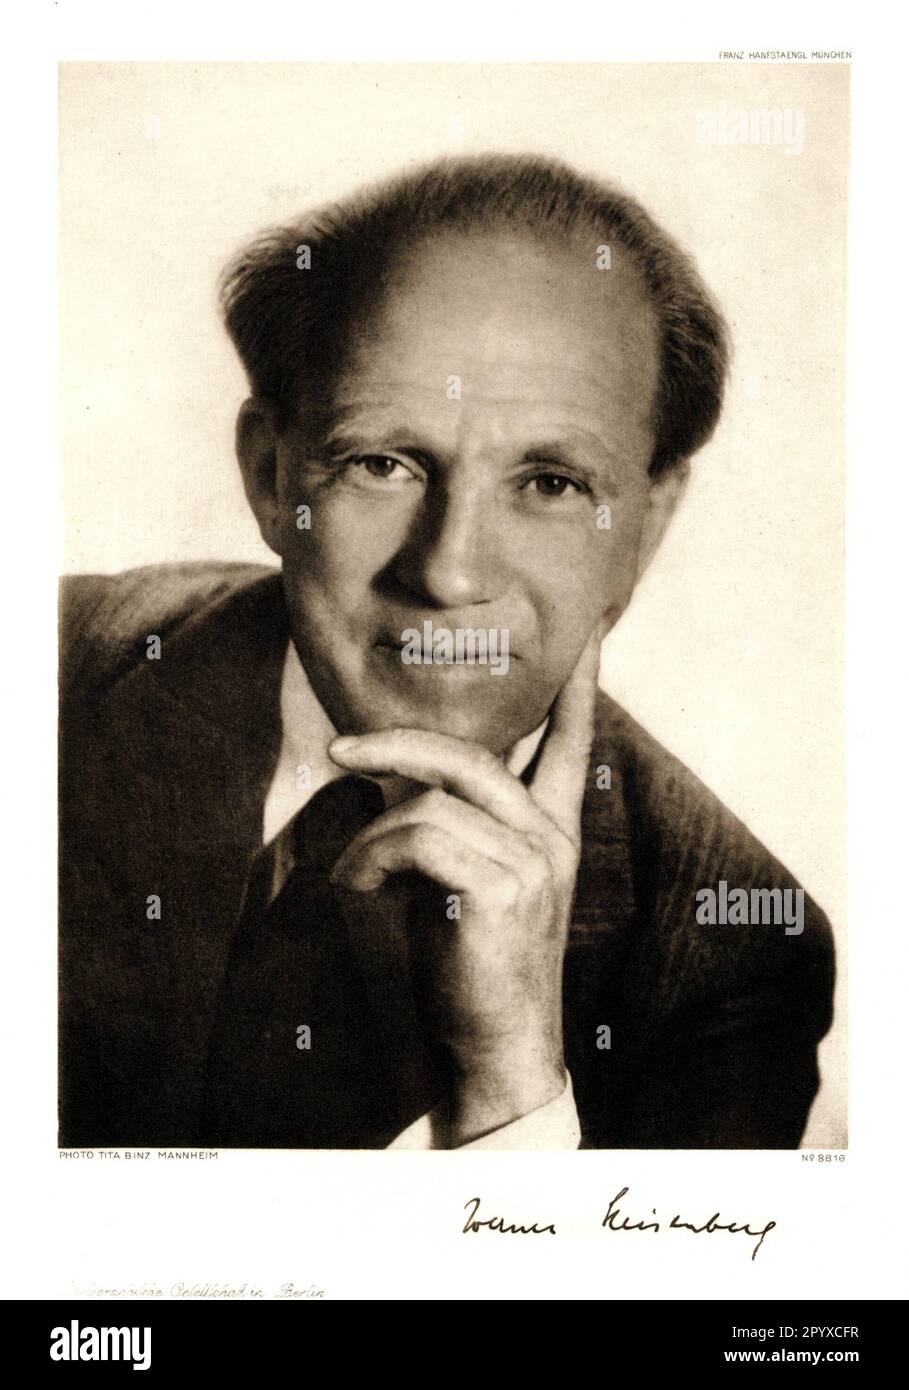 Werner Karl Heisenberg (1901-1976), deutscher Physiker. Heisenberg erhielt 1932 den Nobelpreis für Physik. Foto von Tita Binz, Mannheim. Foto: Heliogravure, Corpus Imaginum, Hanfstaengl. Sammlung (unbefristetes Foto). [Maschinelle Übersetzung] Stockfoto